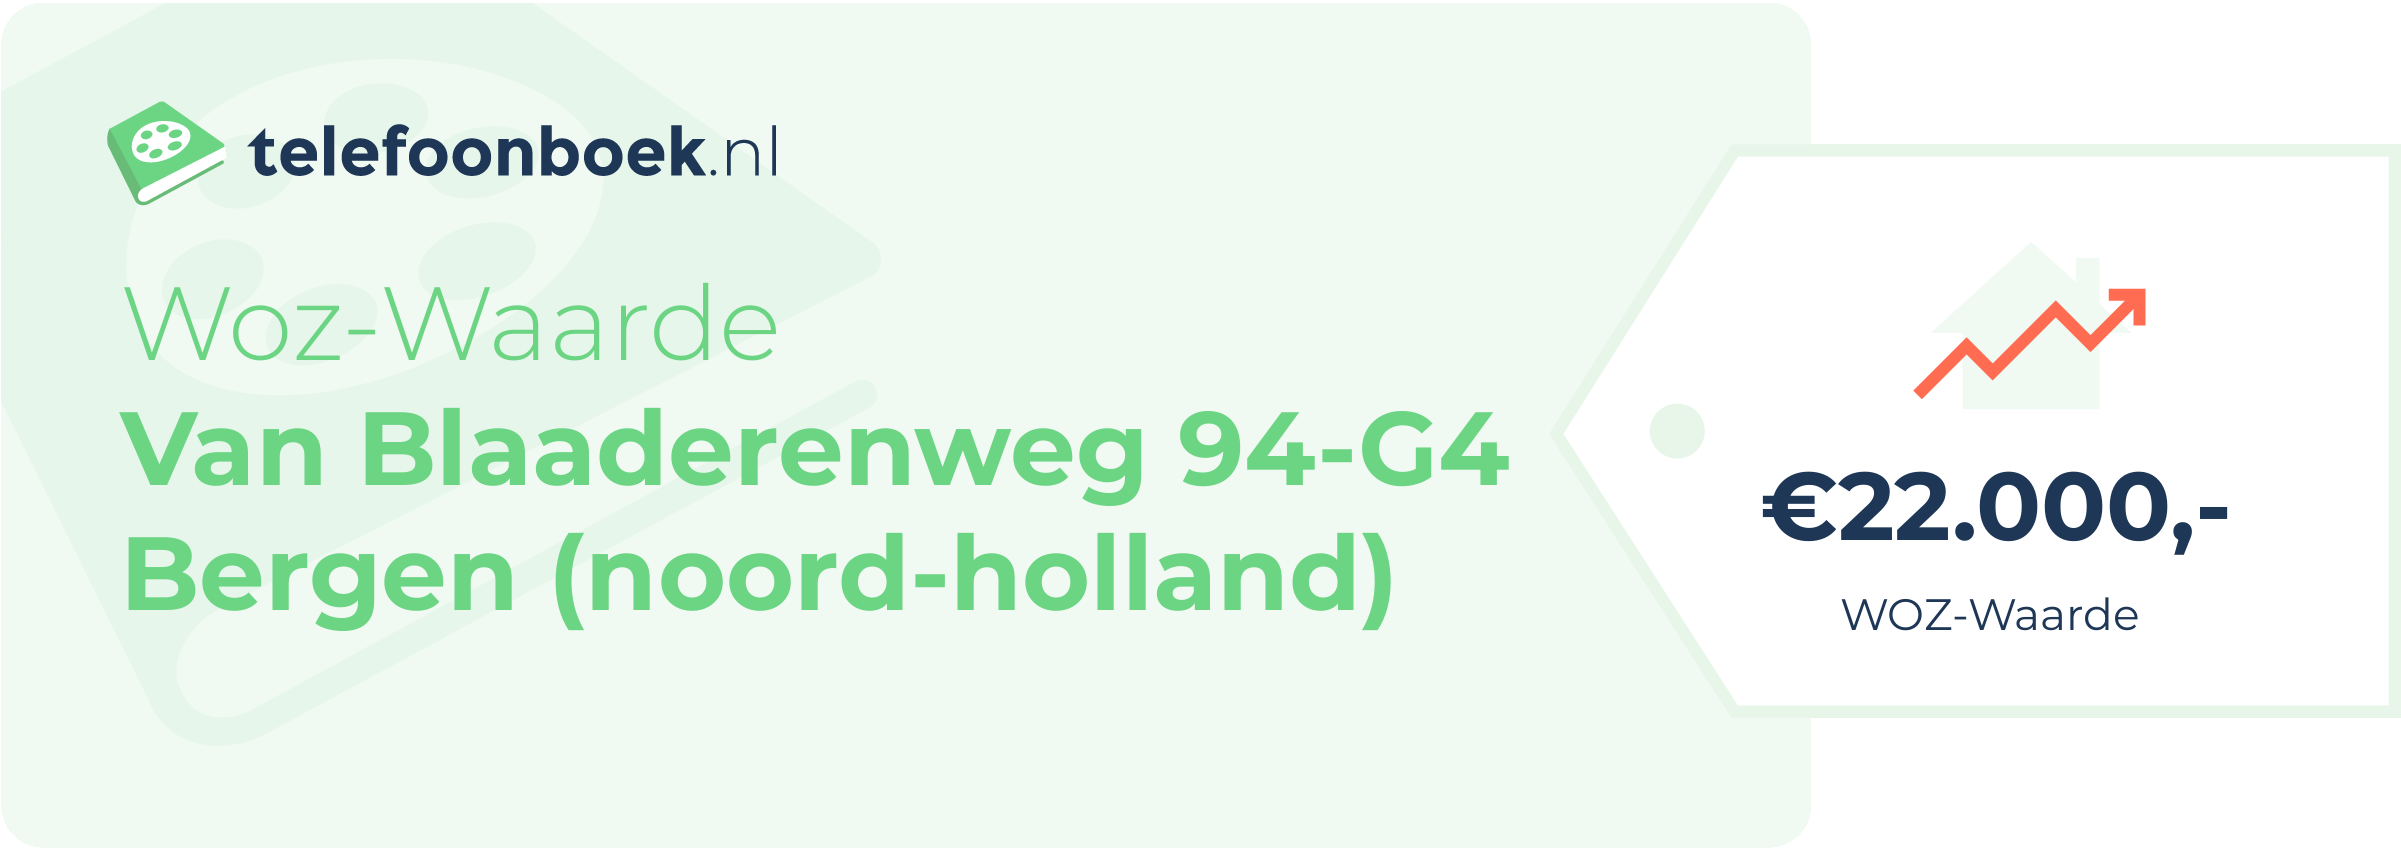 WOZ-waarde Van Blaaderenweg 94-G4 Bergen (Noord-Holland)